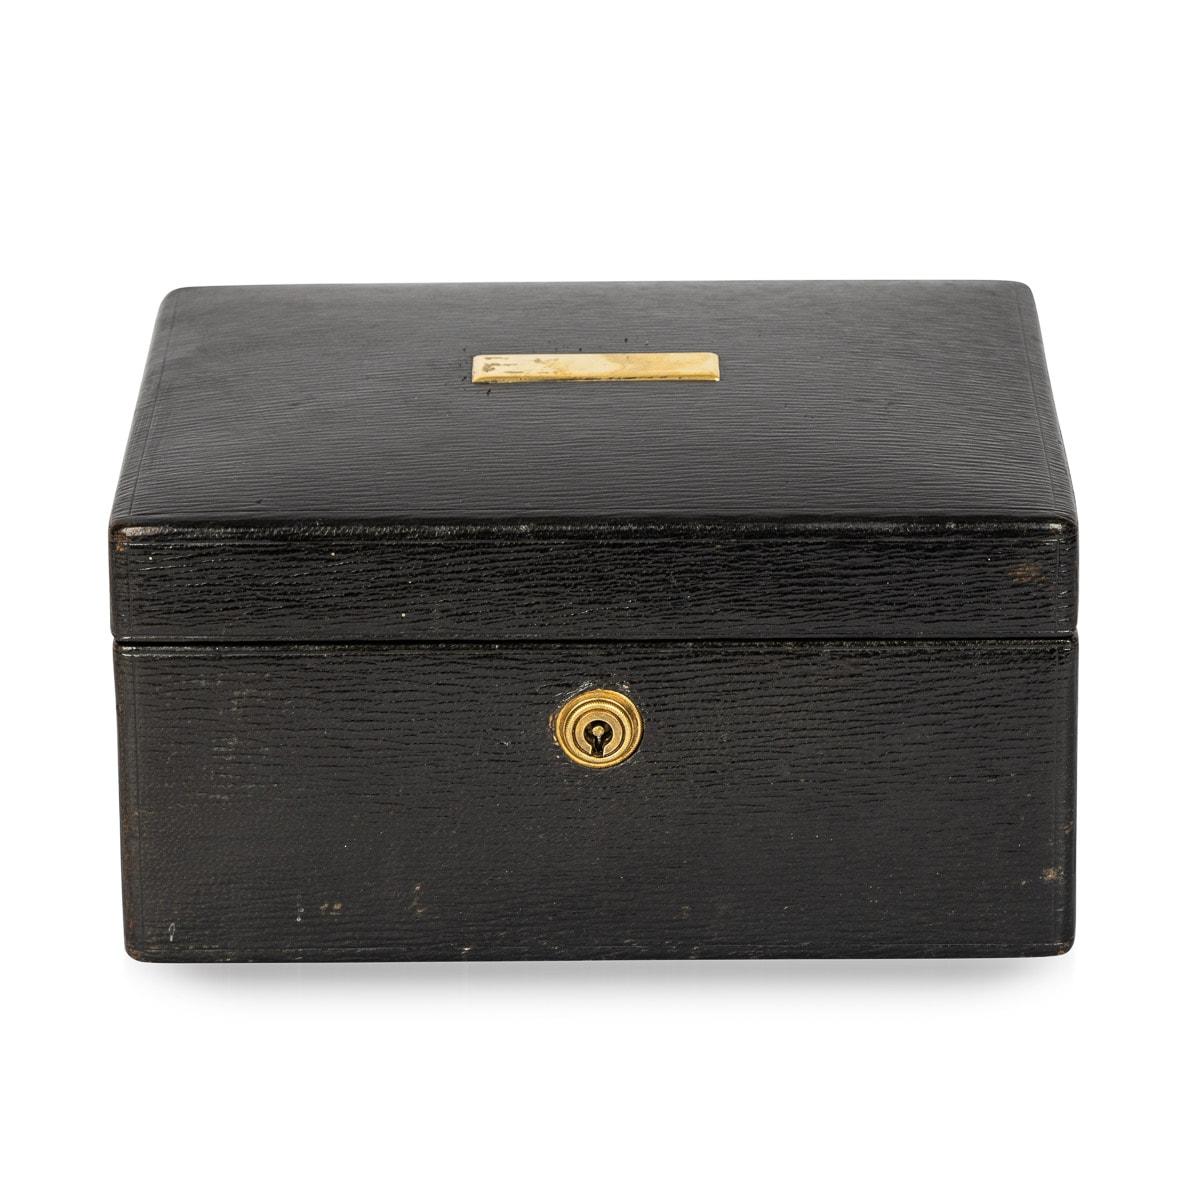 Antike ledergebundene Schmuckschatulle aus dem frühen 20. Jahrhundert. Diese charmante Schachtel ist mit einer Messingplakette und einem runden Schild versehen. Im Inneren befinden sich zwei herausnehmbare, mit Samt gefütterte Fächer, die mit